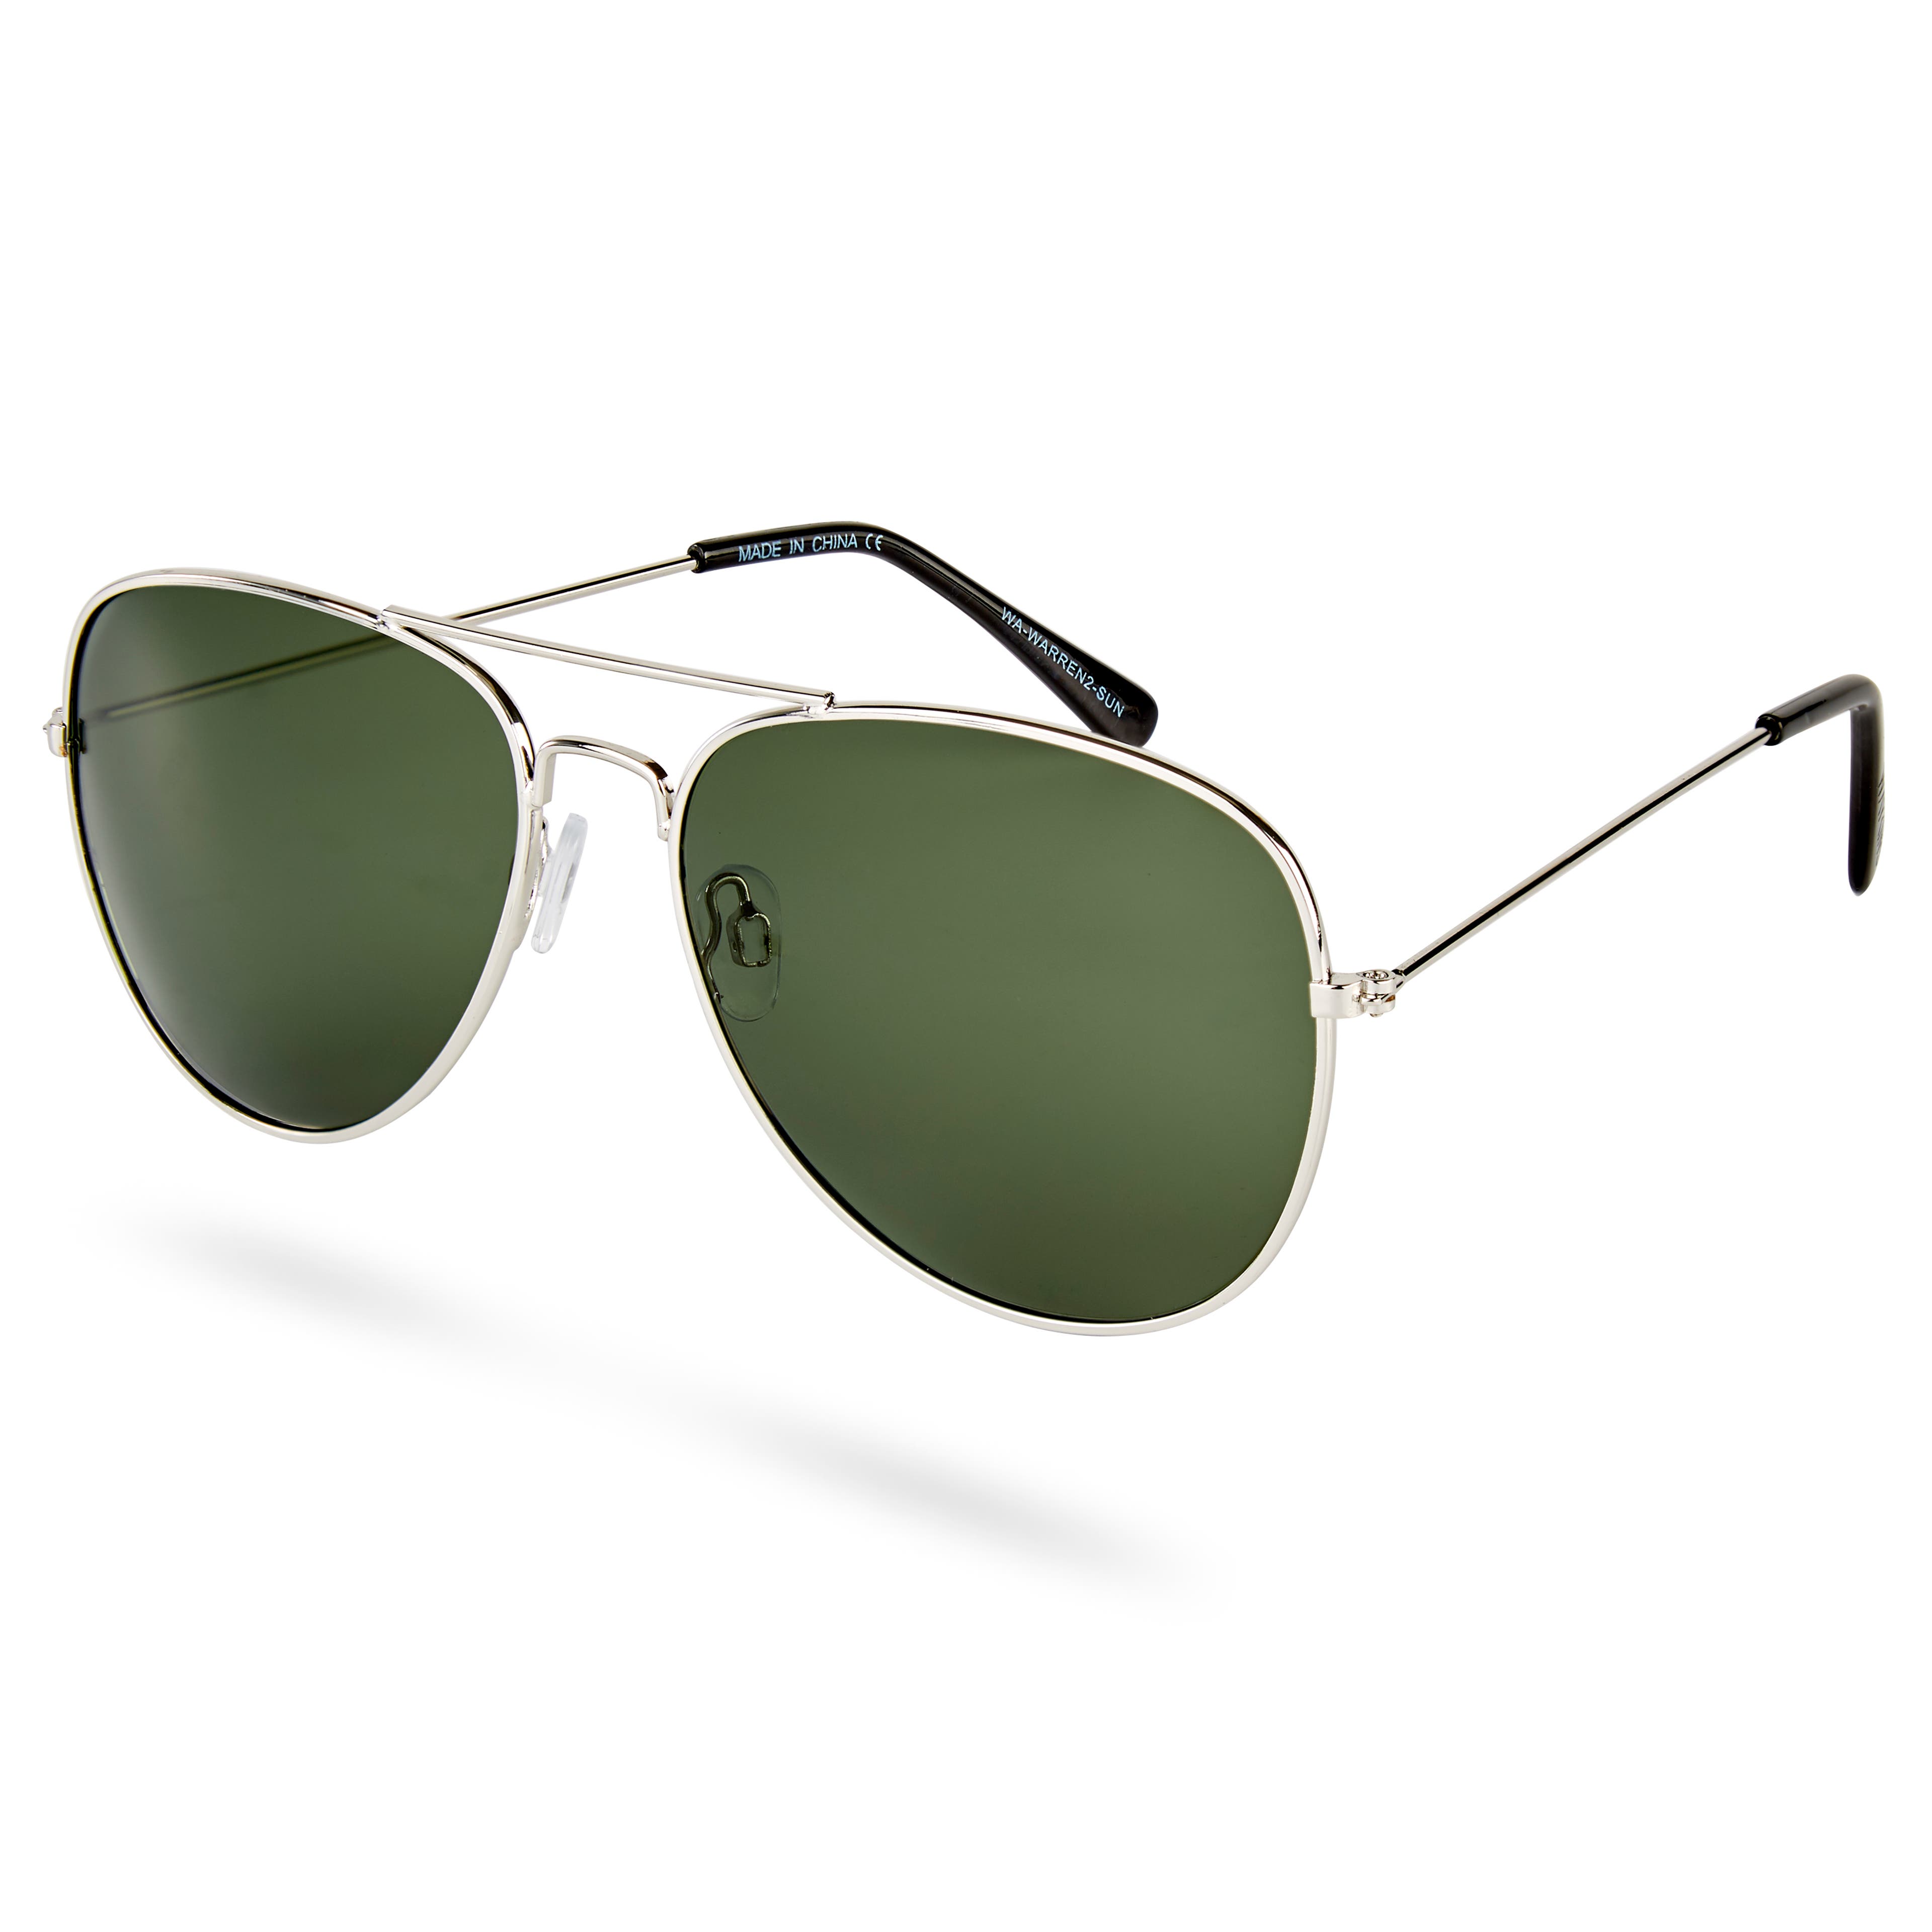 Sluneční brýle Warren Aviator ve stříbrných tónech se zelenými čočkami